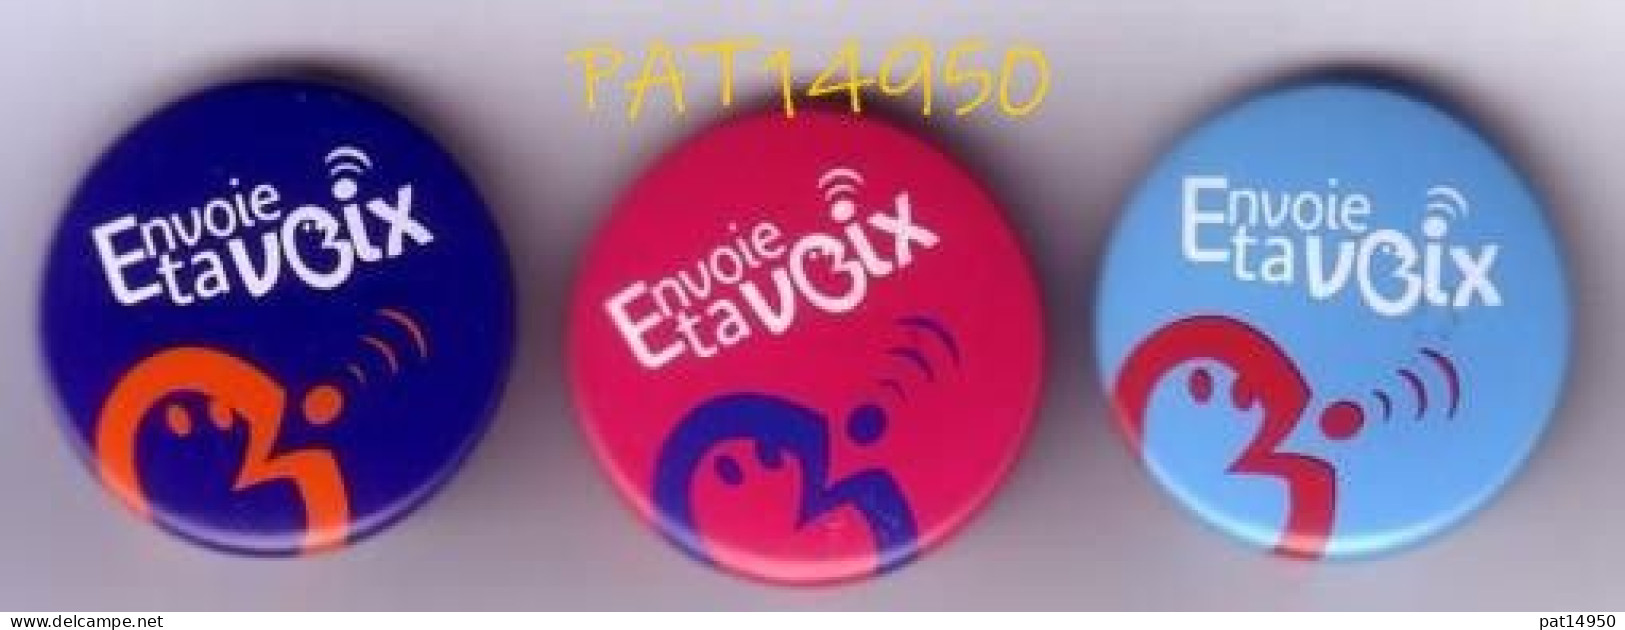 PAT14950 FRANCE TELECOM    MESSAGE EXPRESS  Envoie Ta VOIX  Lot De 3 Badges Différents - Telecom De Francia